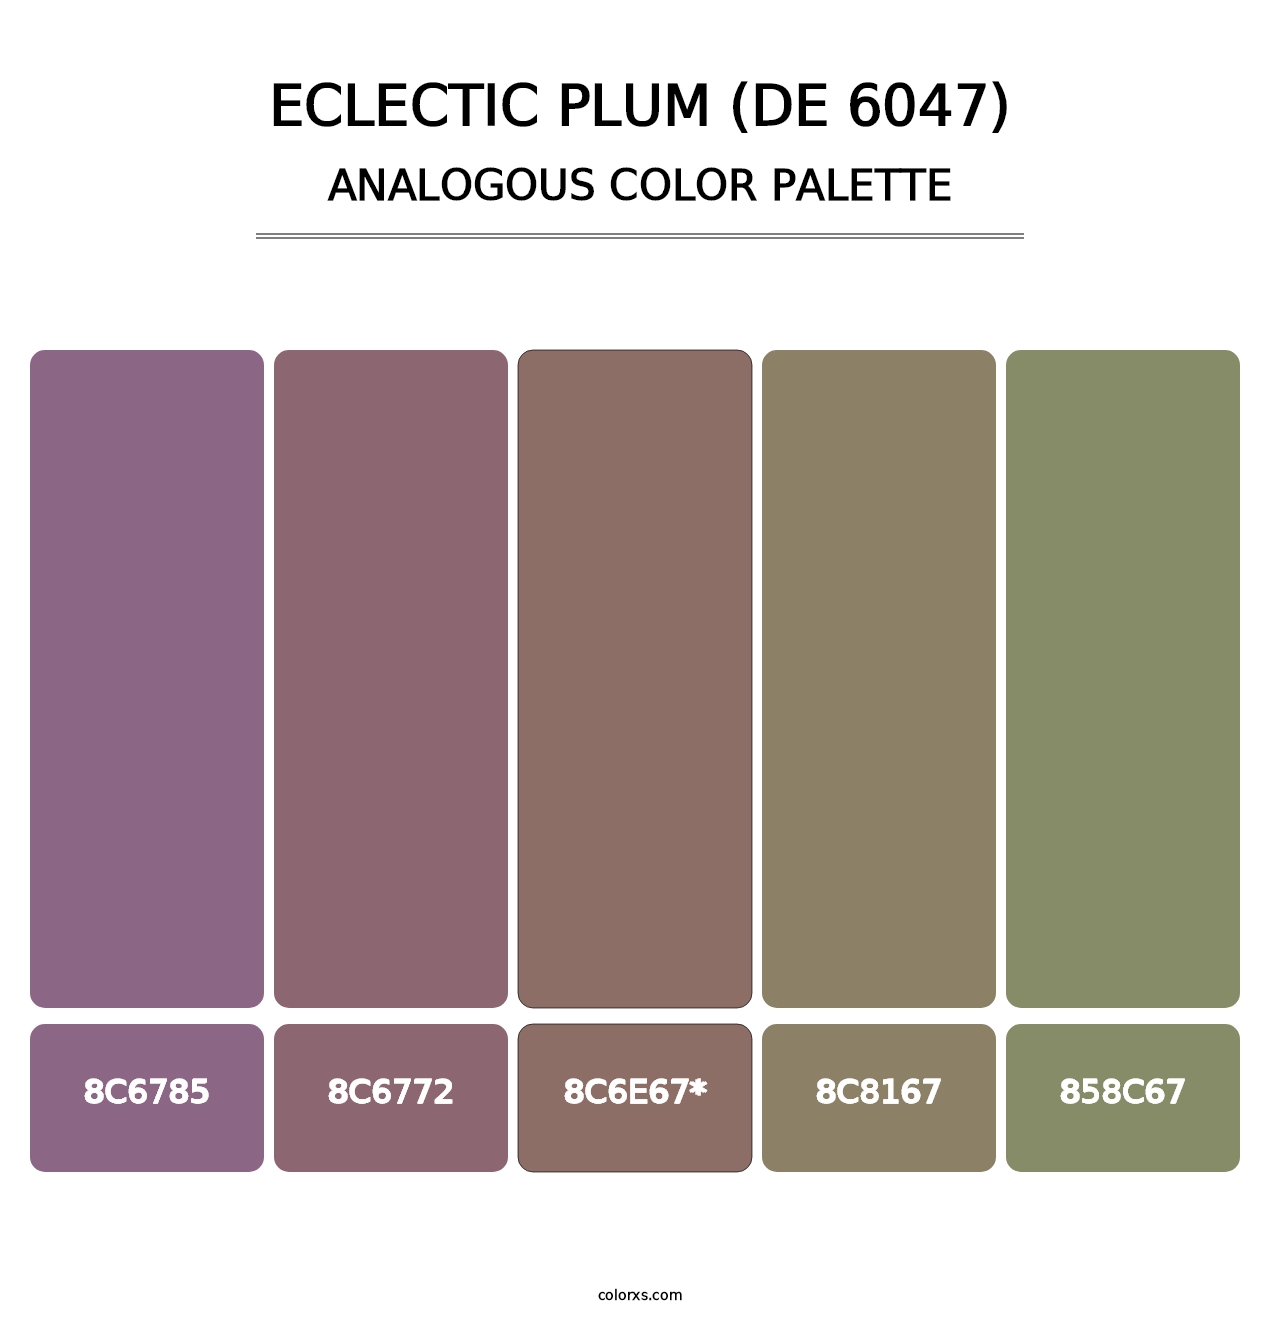 Eclectic Plum (DE 6047) - Analogous Color Palette